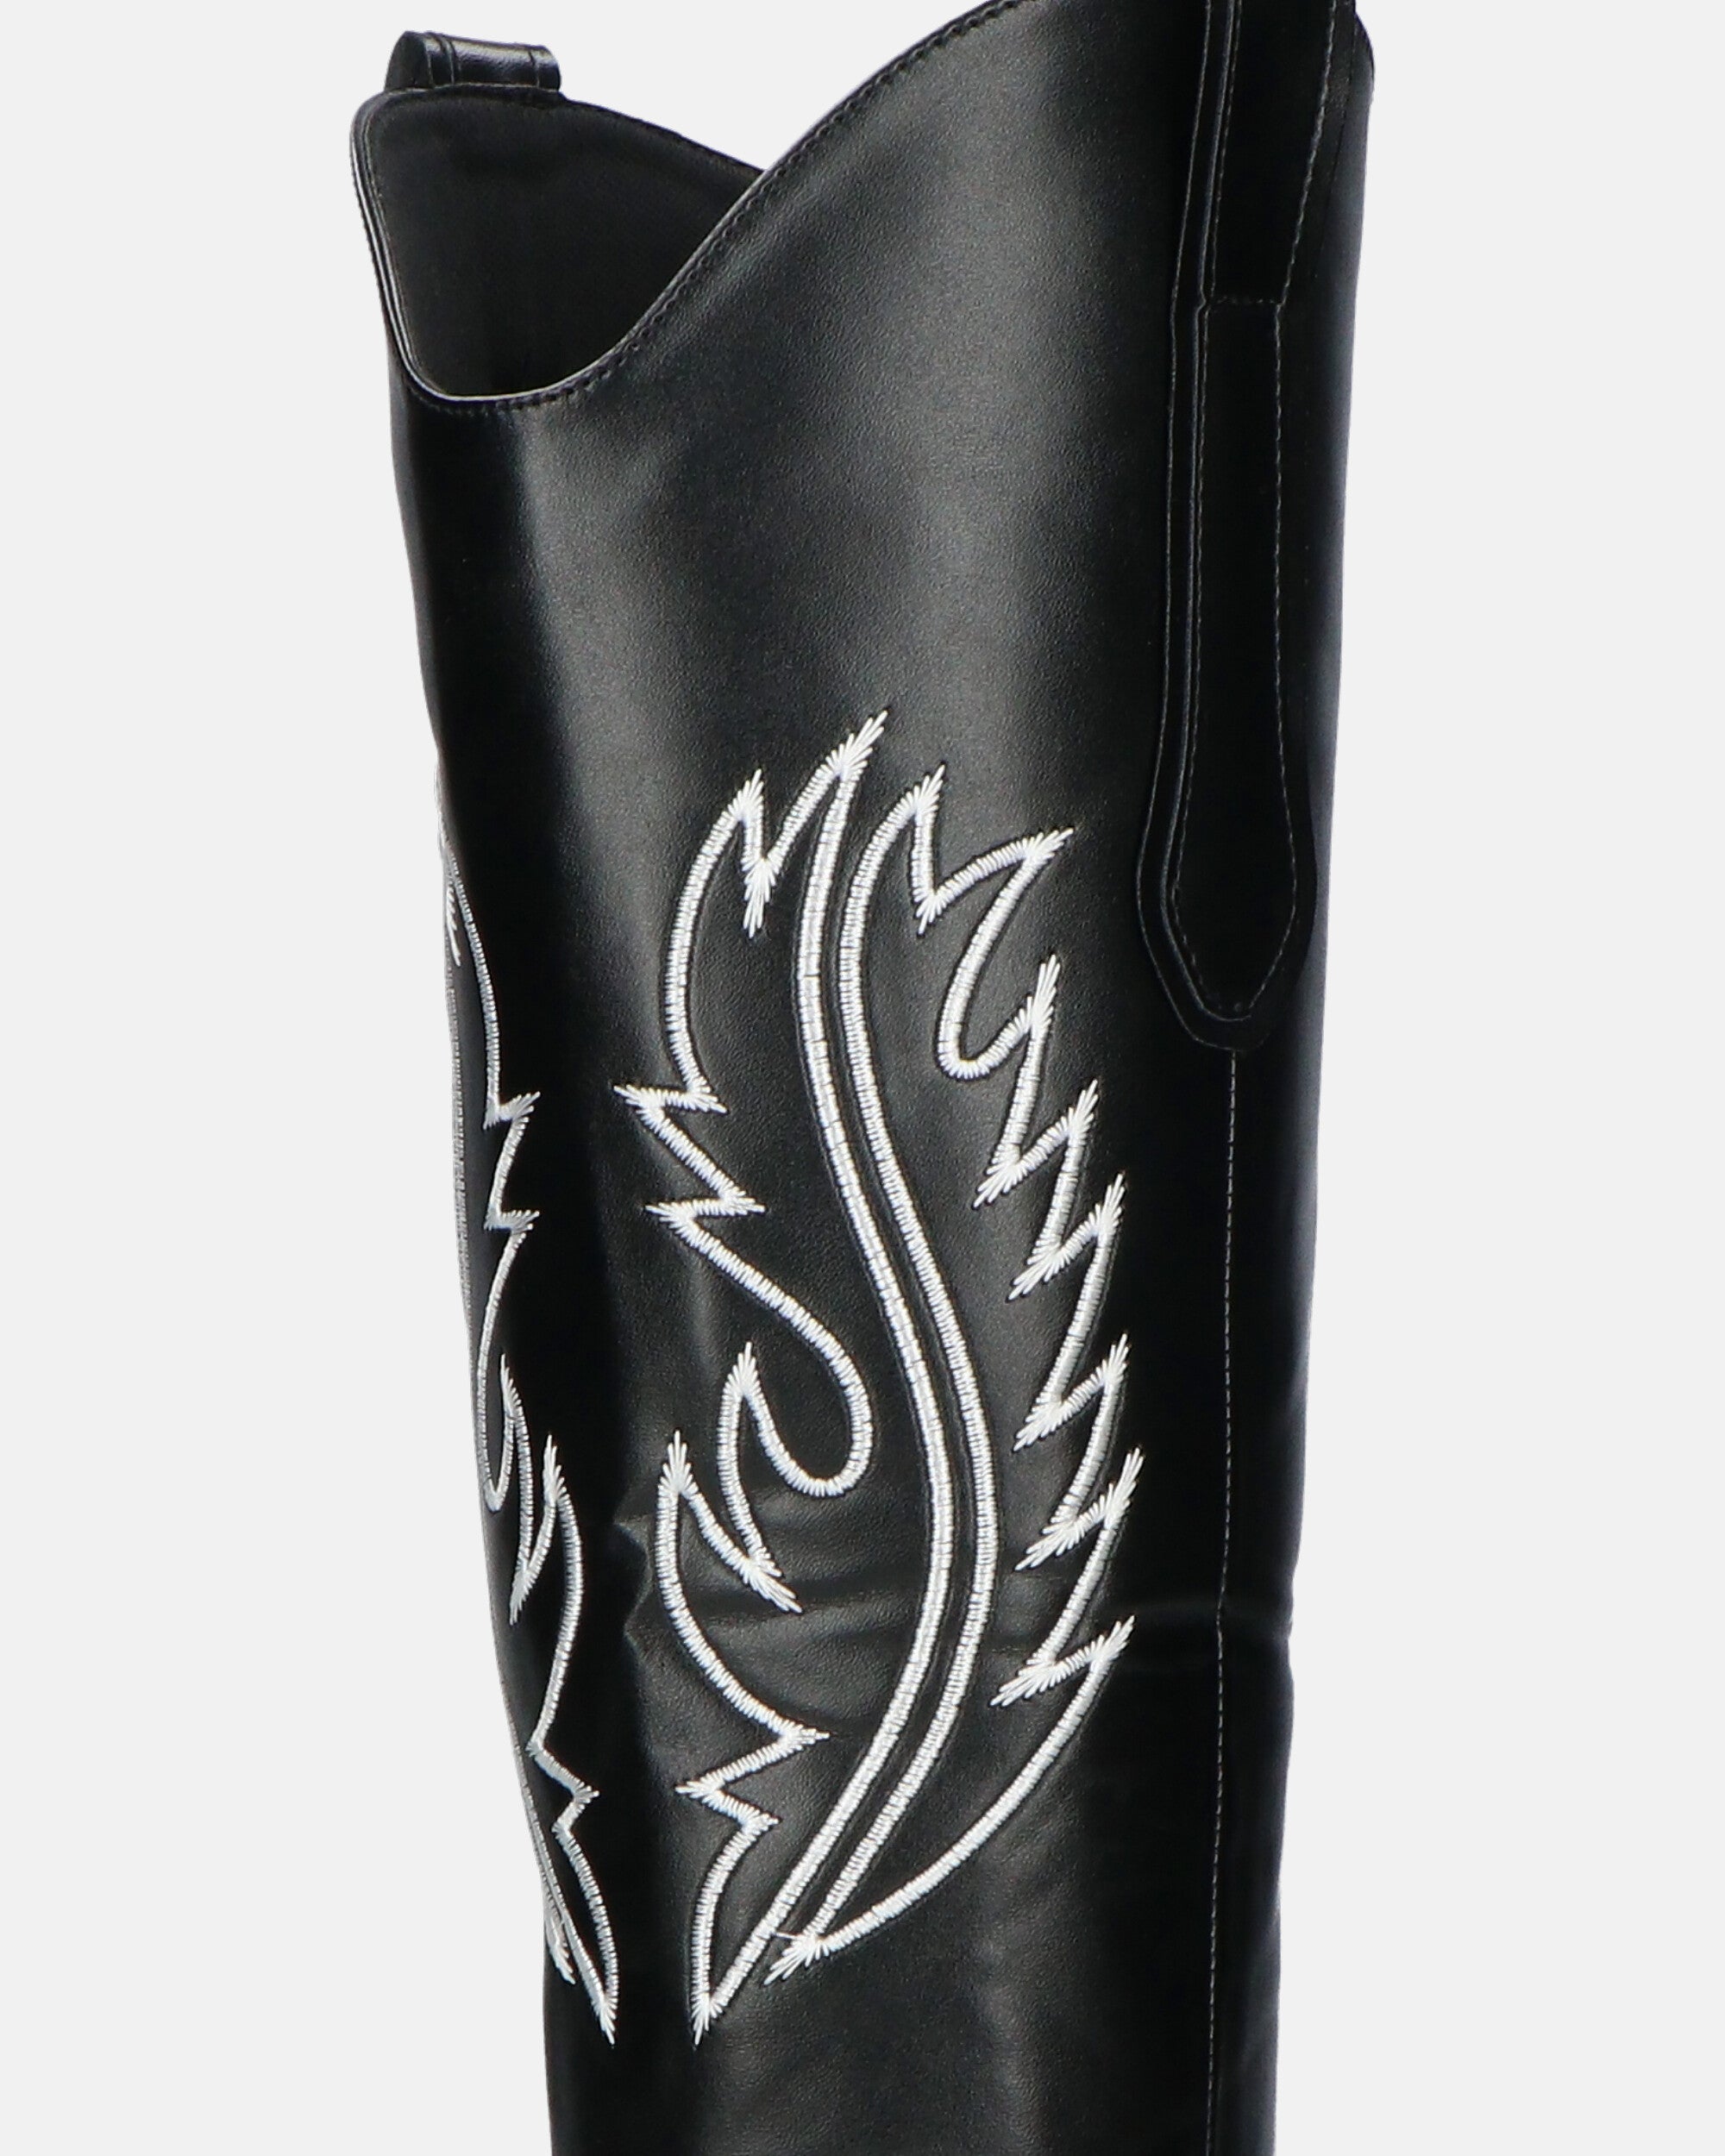 2 en 1 - CAMILA - botas tejanas con pala extraíble en ecopiel negra y bordado blanco